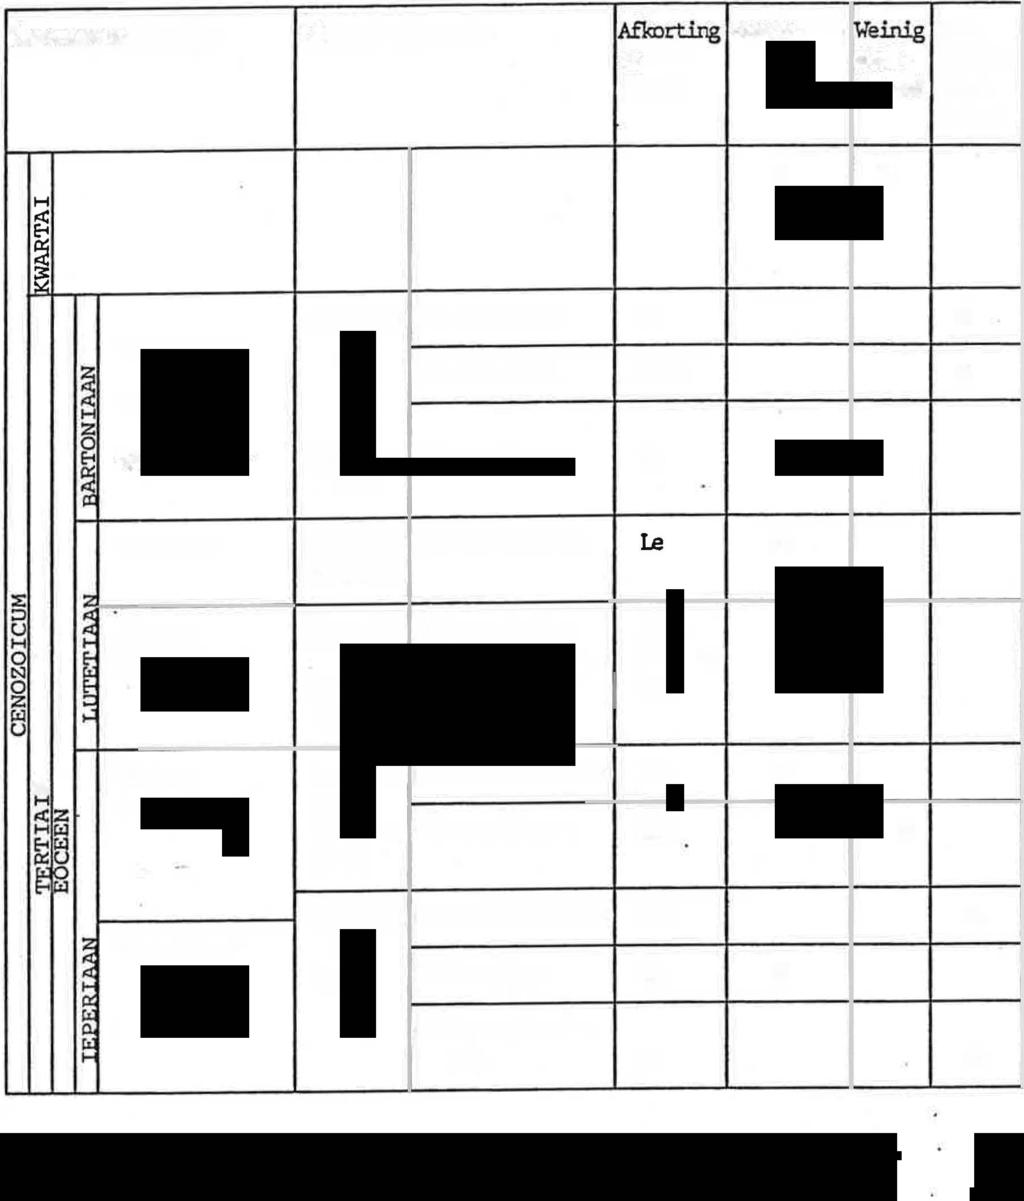 - 20 - Tabel 4 - Stratigrafisch overzicht van de lagenopl:x::uor in het stu:liegebied :E ::l u 1-i 0 N 0 z tj 1-i es I 1-i êl 8 I I I; x x Fomatie Ud van Ursel al x Asschia.